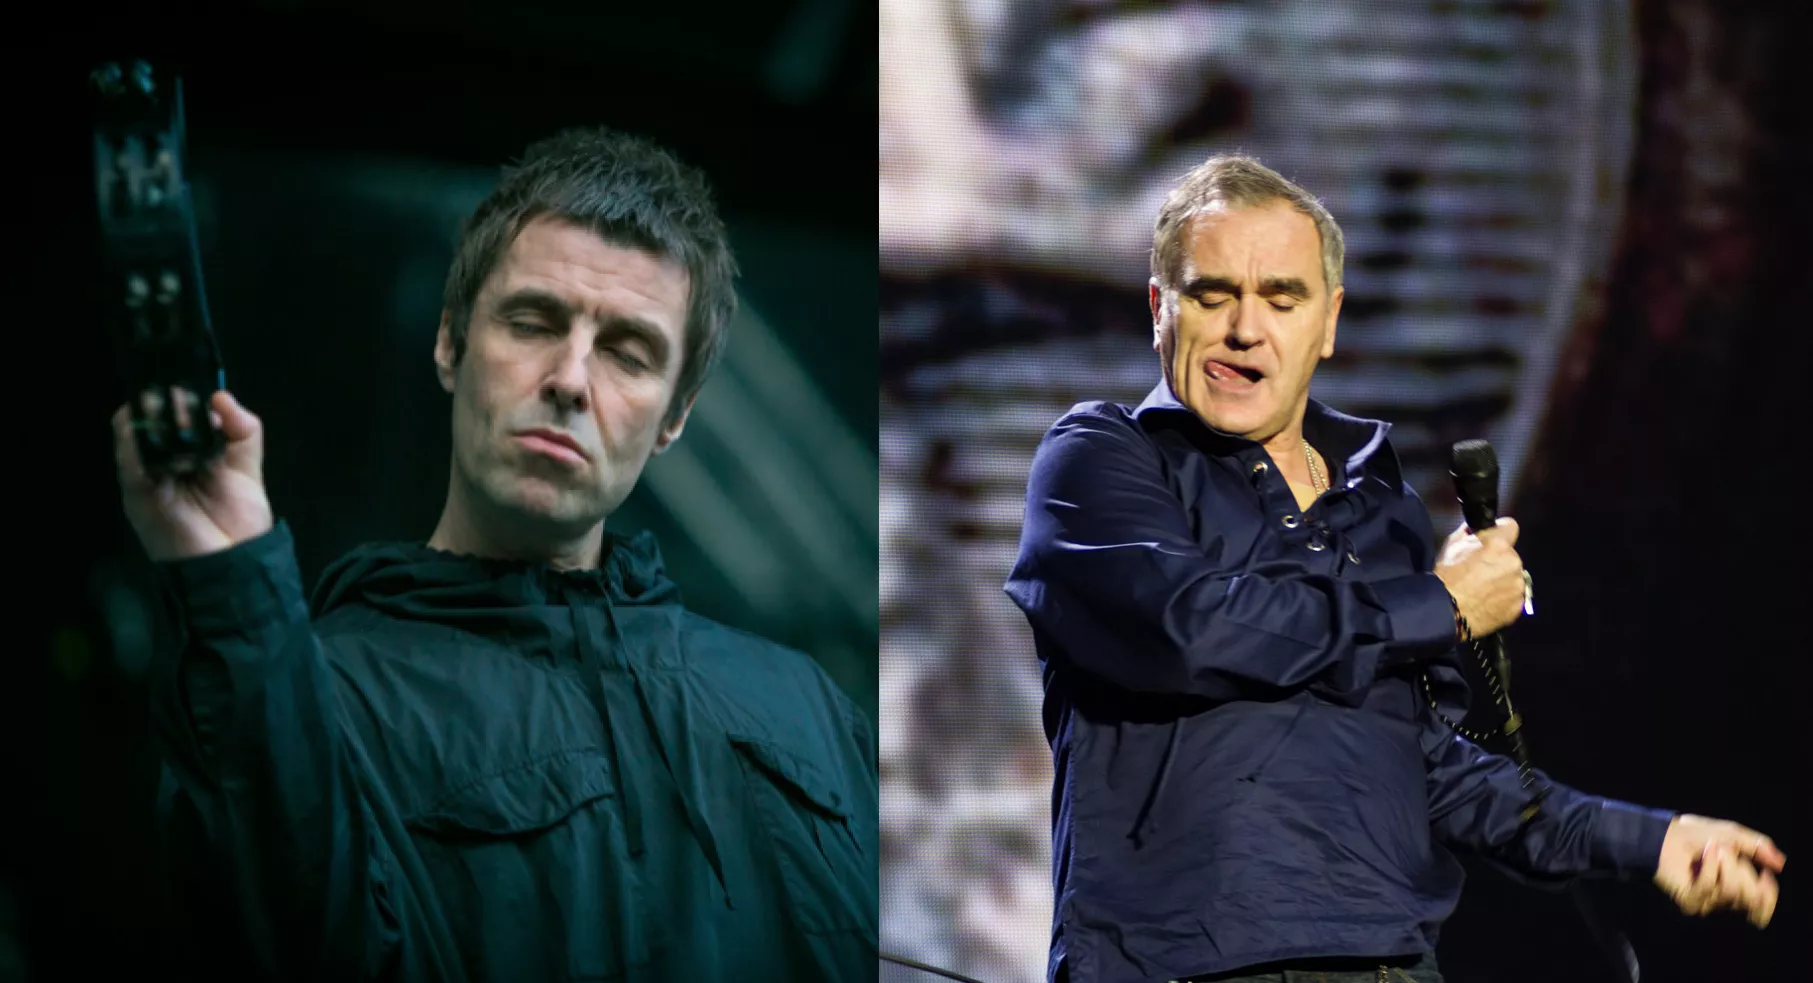 Liam till Morrissey: "Önskar dig en eländig jul"